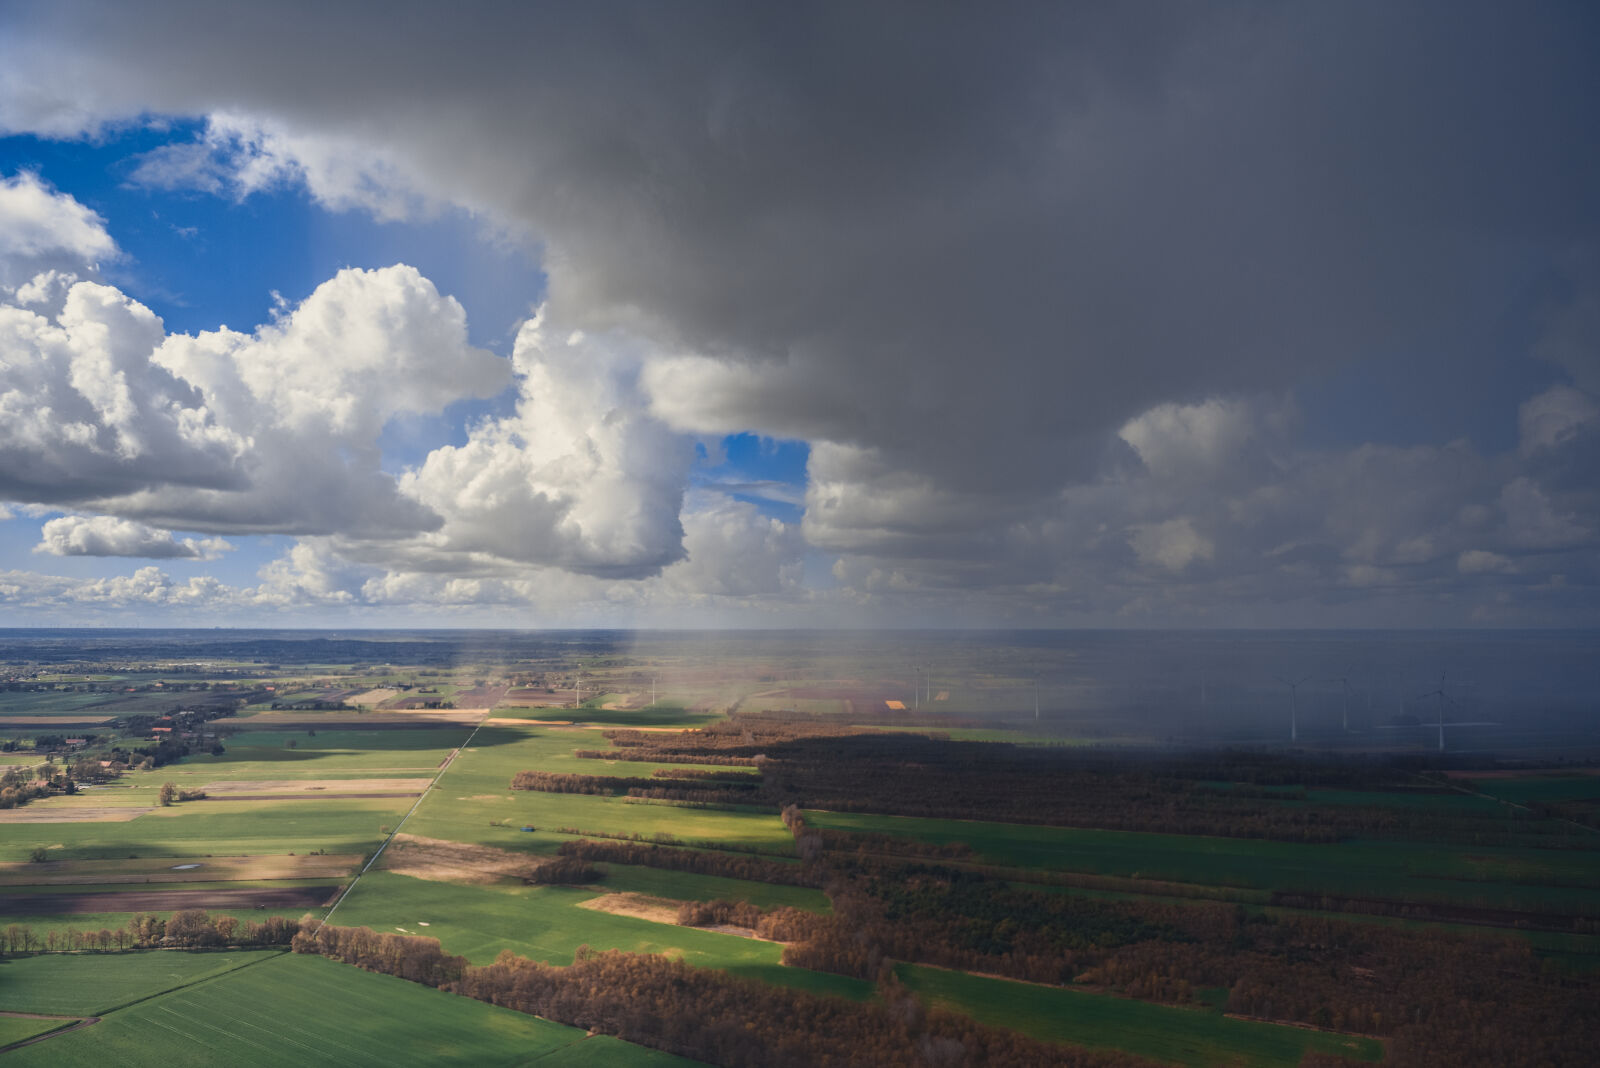 Nikon AF-S Nikkor 24-70mm F2.8G ED sample photo. Landscape, nature, sky, clouds photography